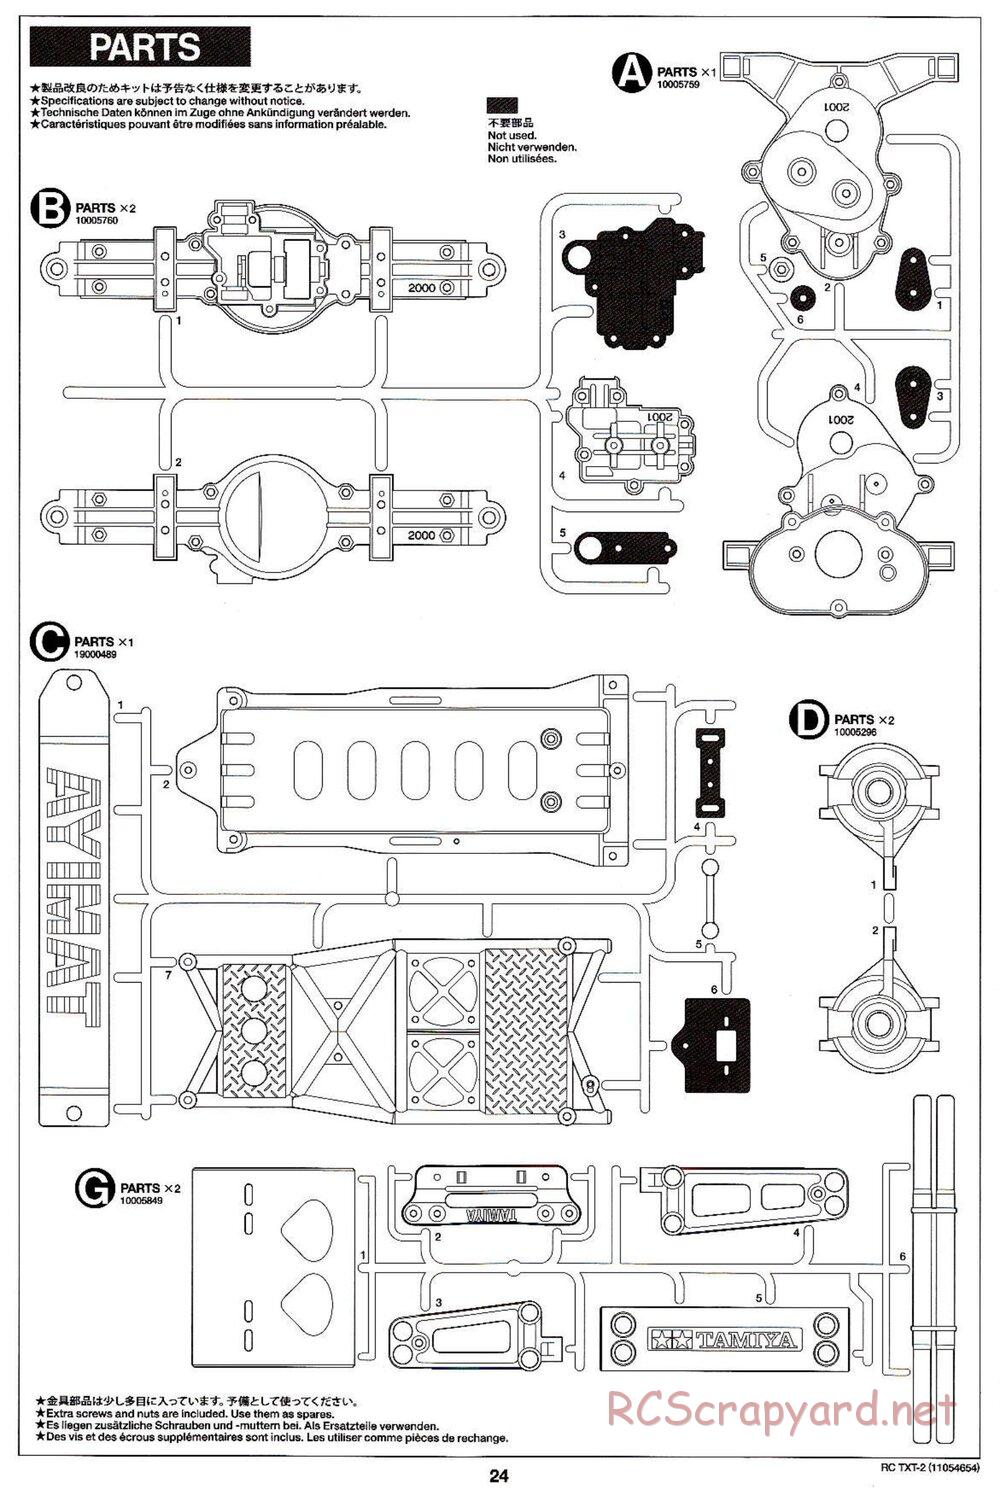 Tamiya - TXT-2 Chassis - Manual - Page 24